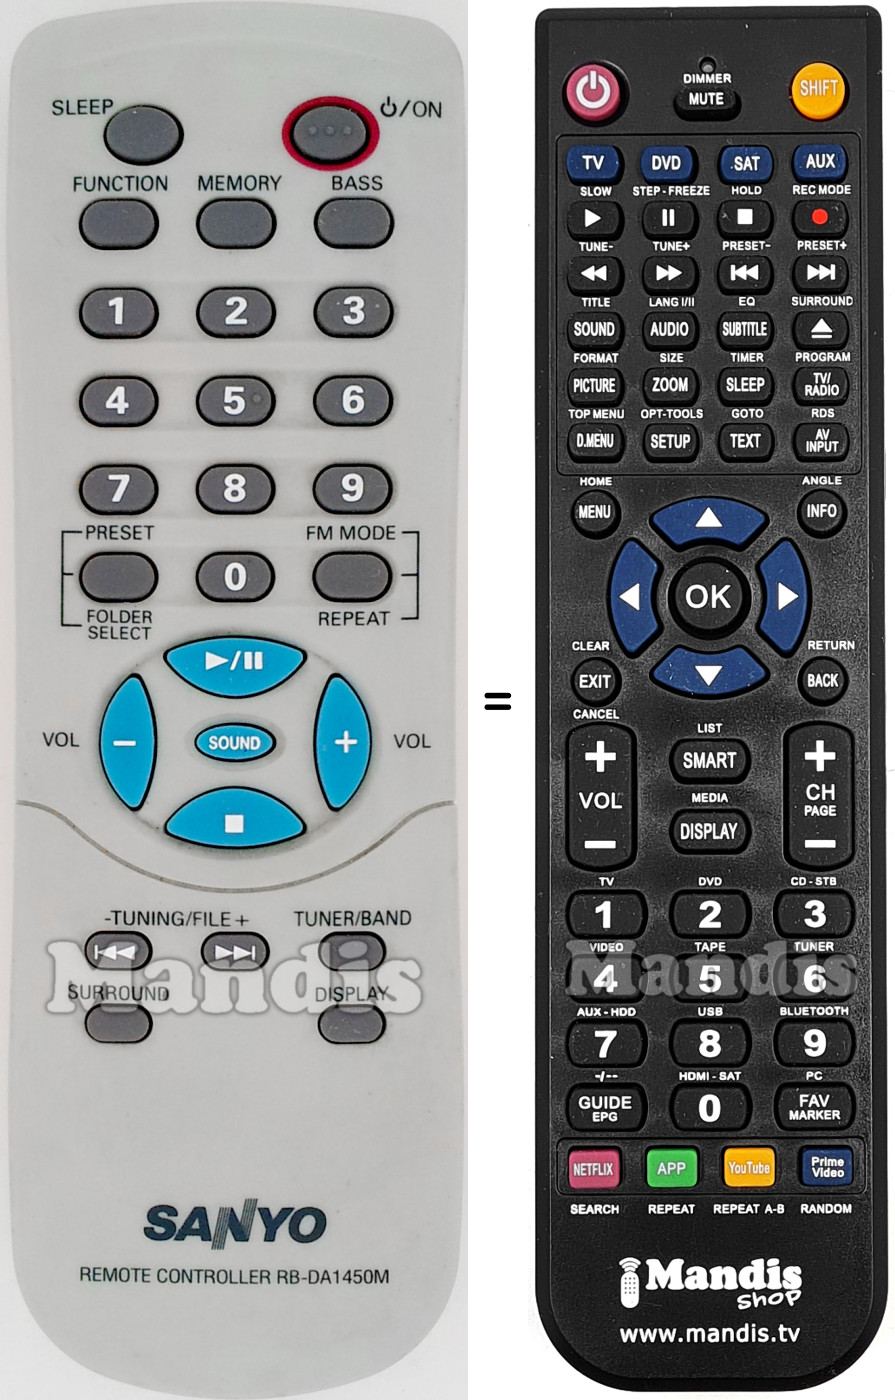 Replacement remote control RB-DA1450M